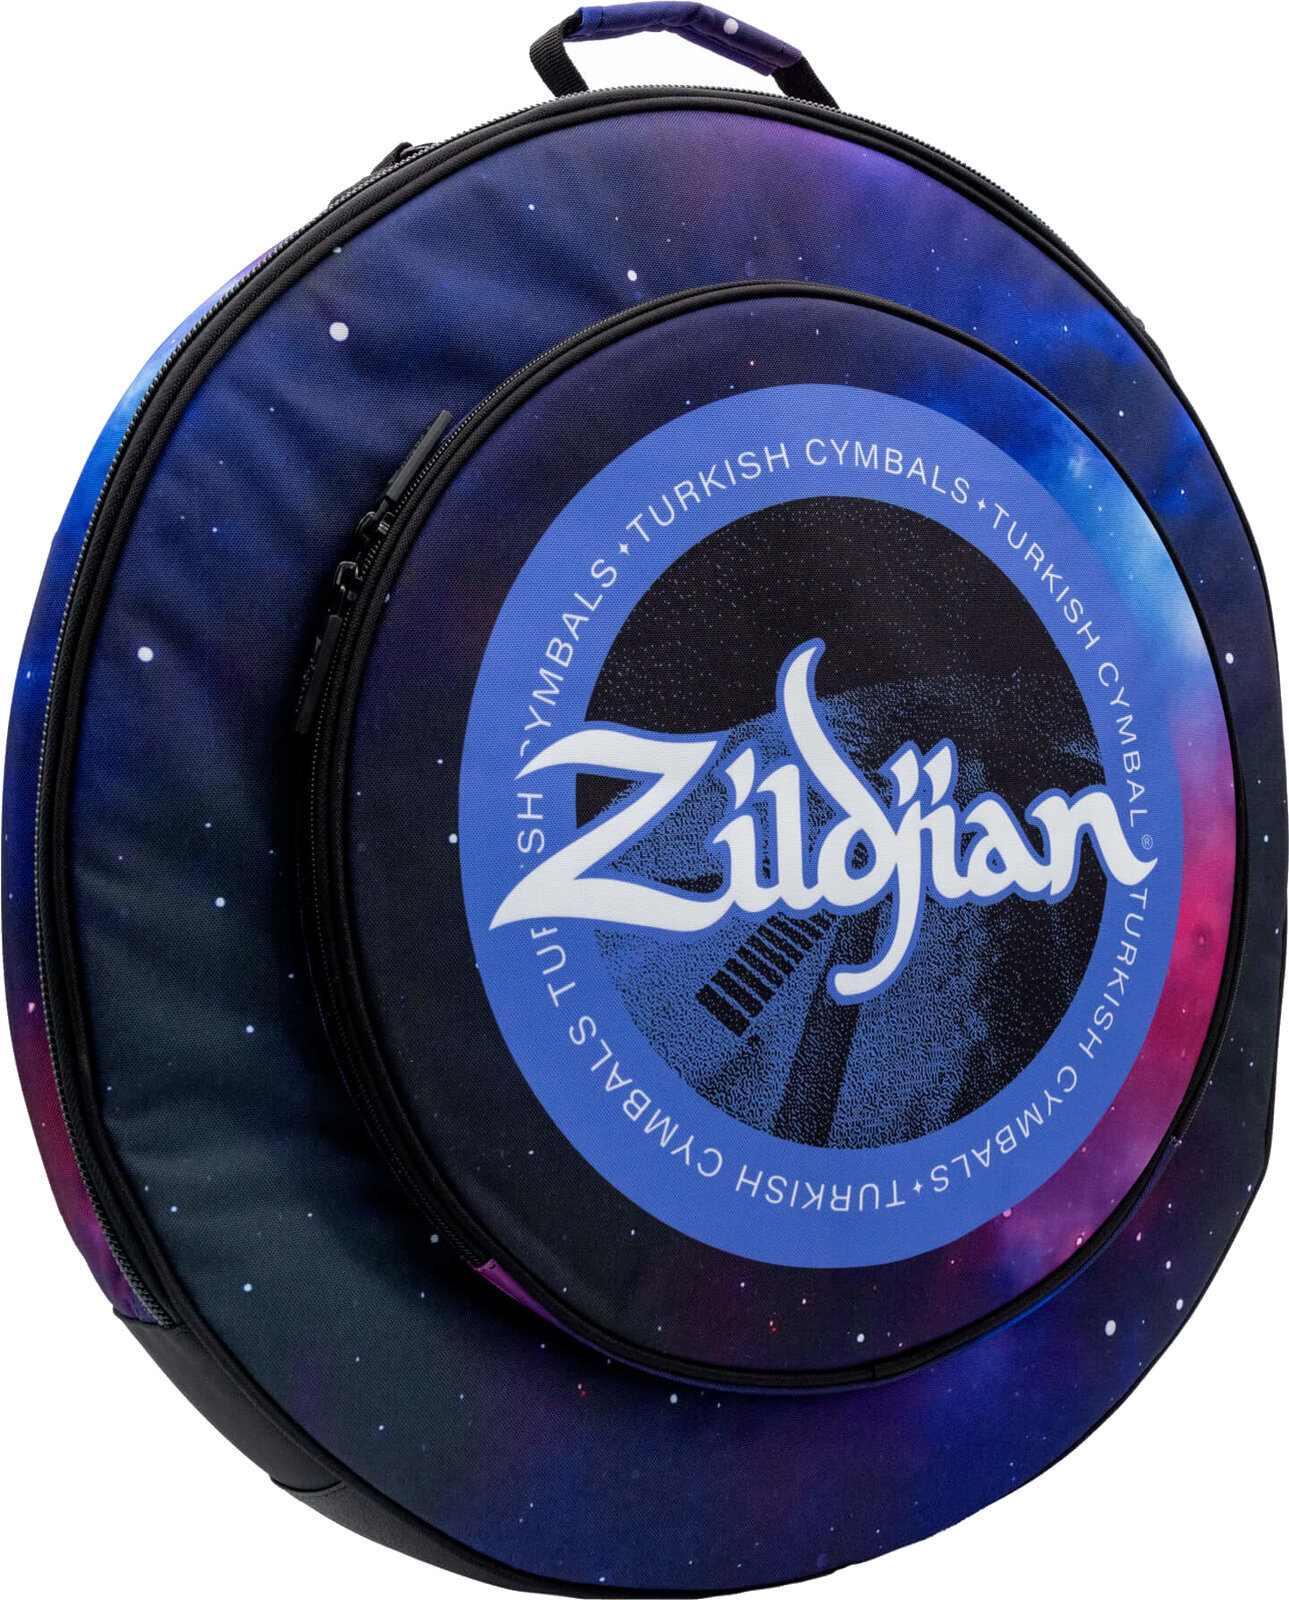 Pokrowiec na talerze perkusyjne Zildjian 20" Student Cymbal Bag Purple Galaxy Pokrowiec na talerze perkusyjne